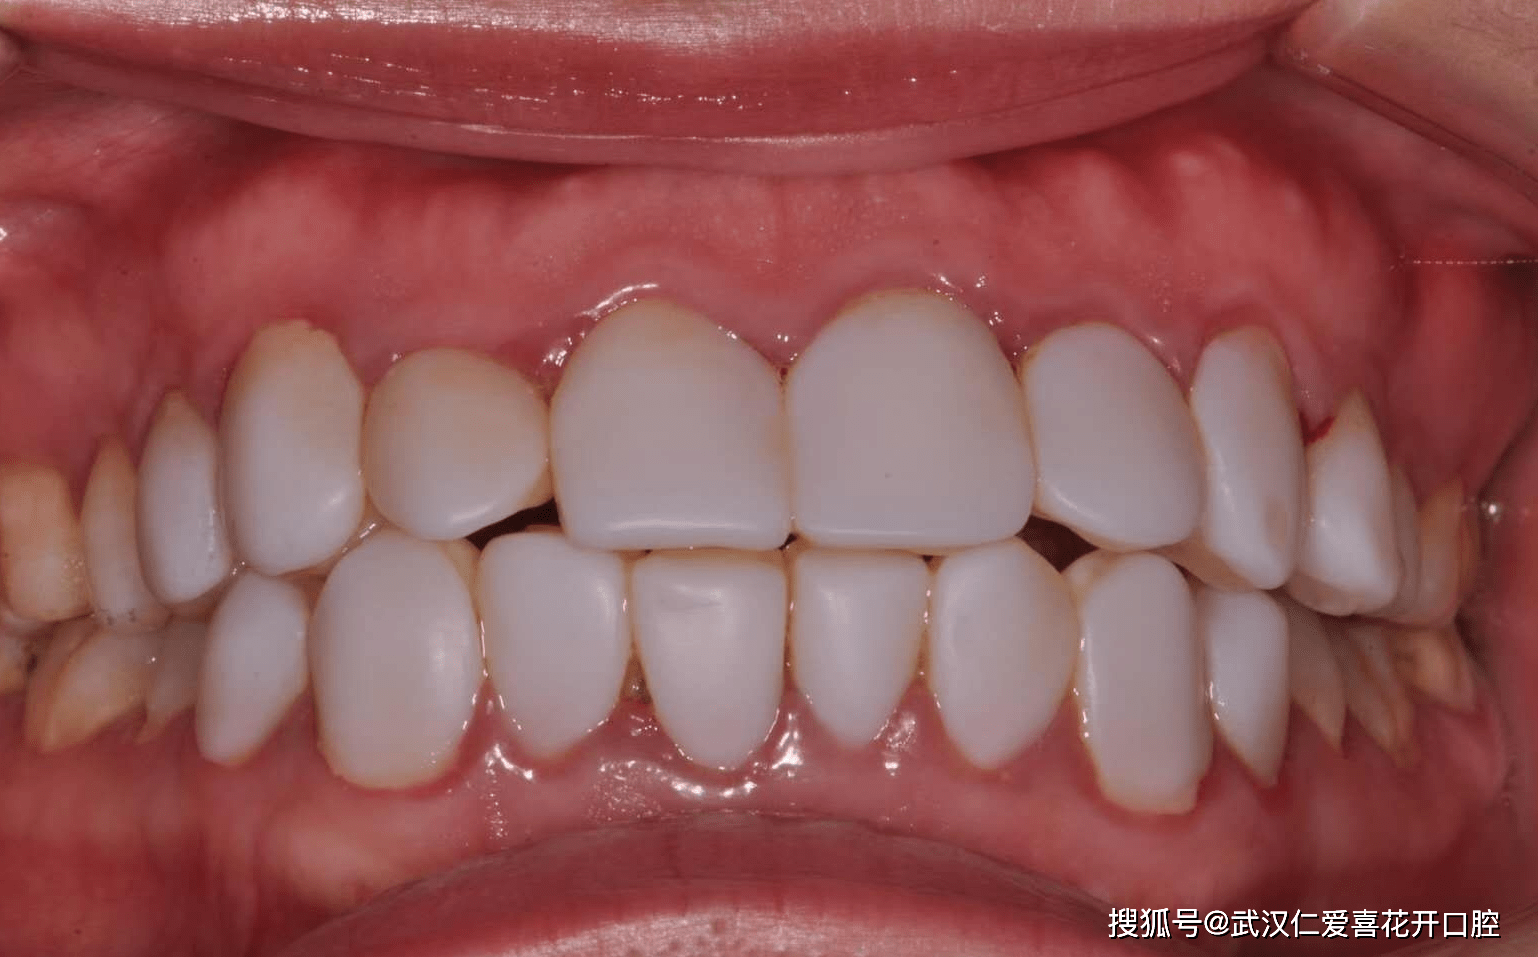 6d纳米浮雕牙这样的牙齿没有层次感,看起来非常死板不自然!